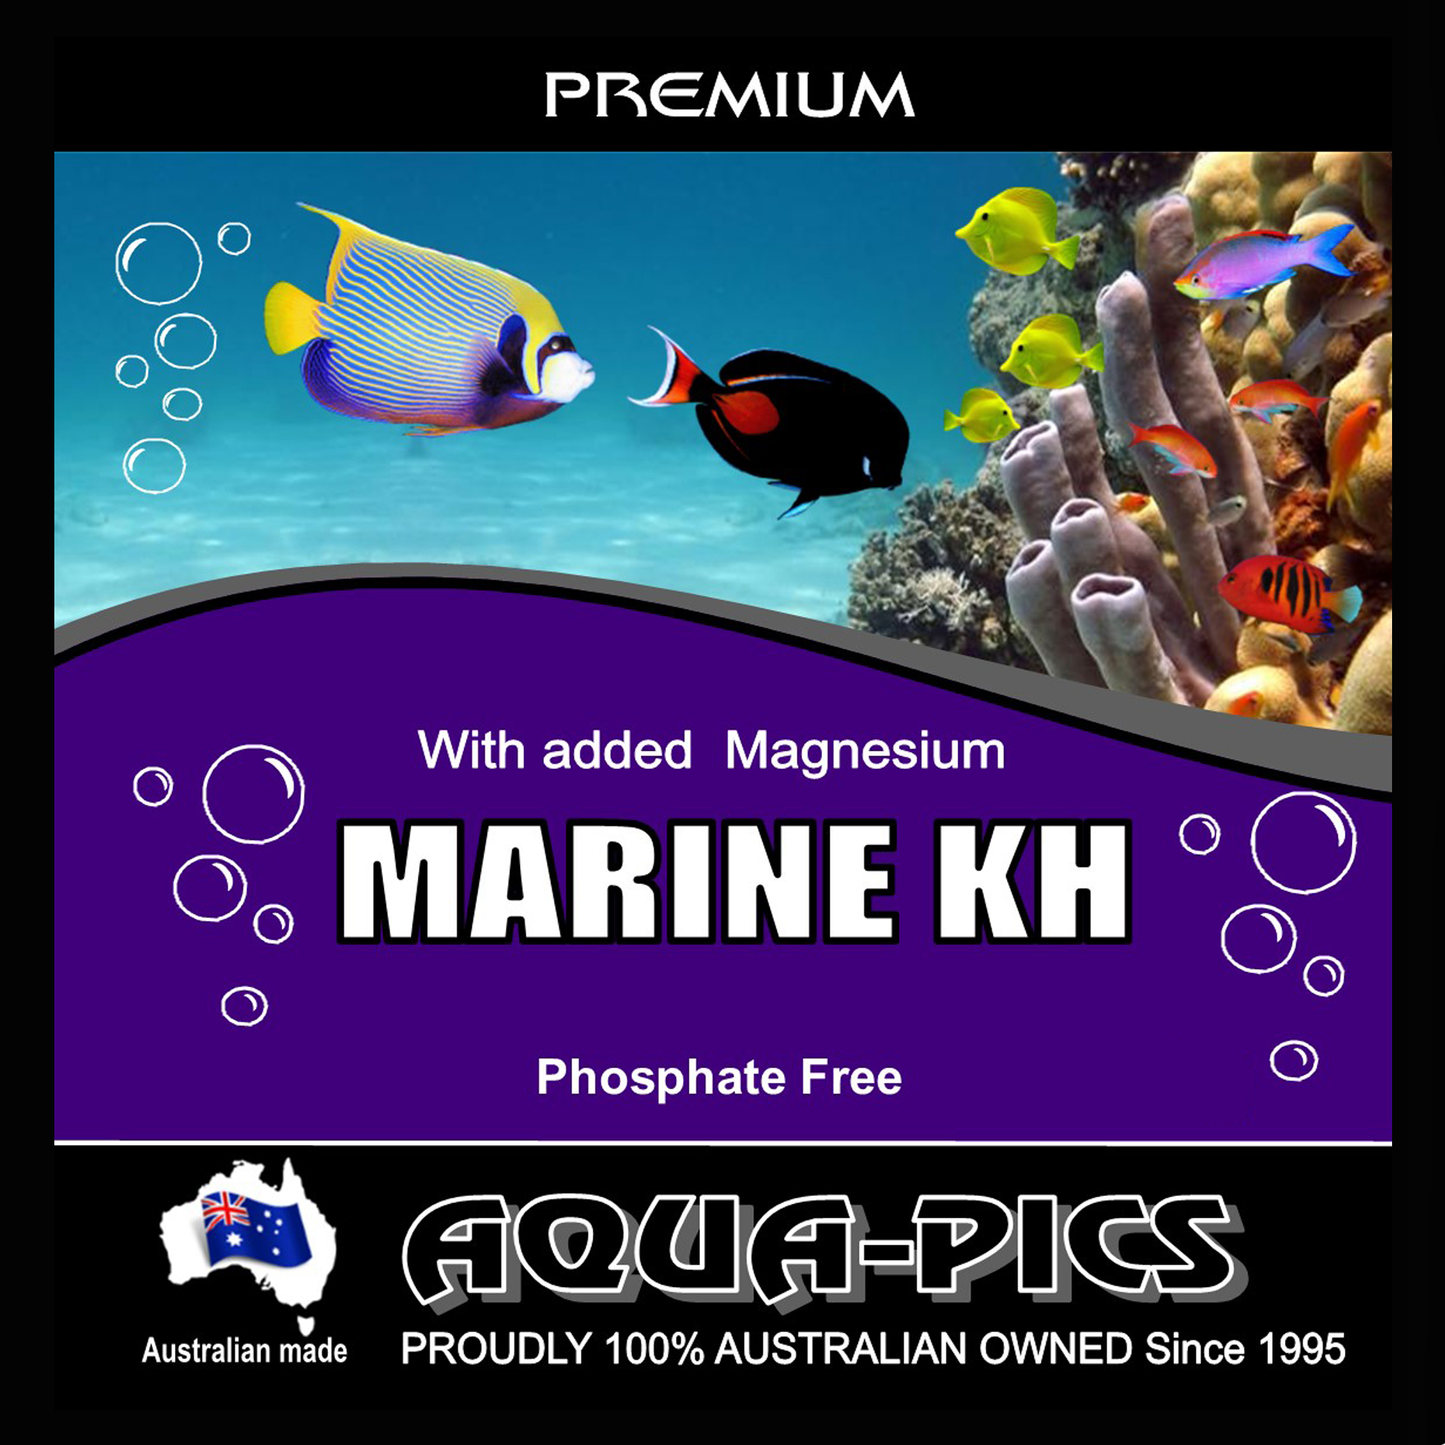 Marine KH Buffer Phosphate free 2.5kg